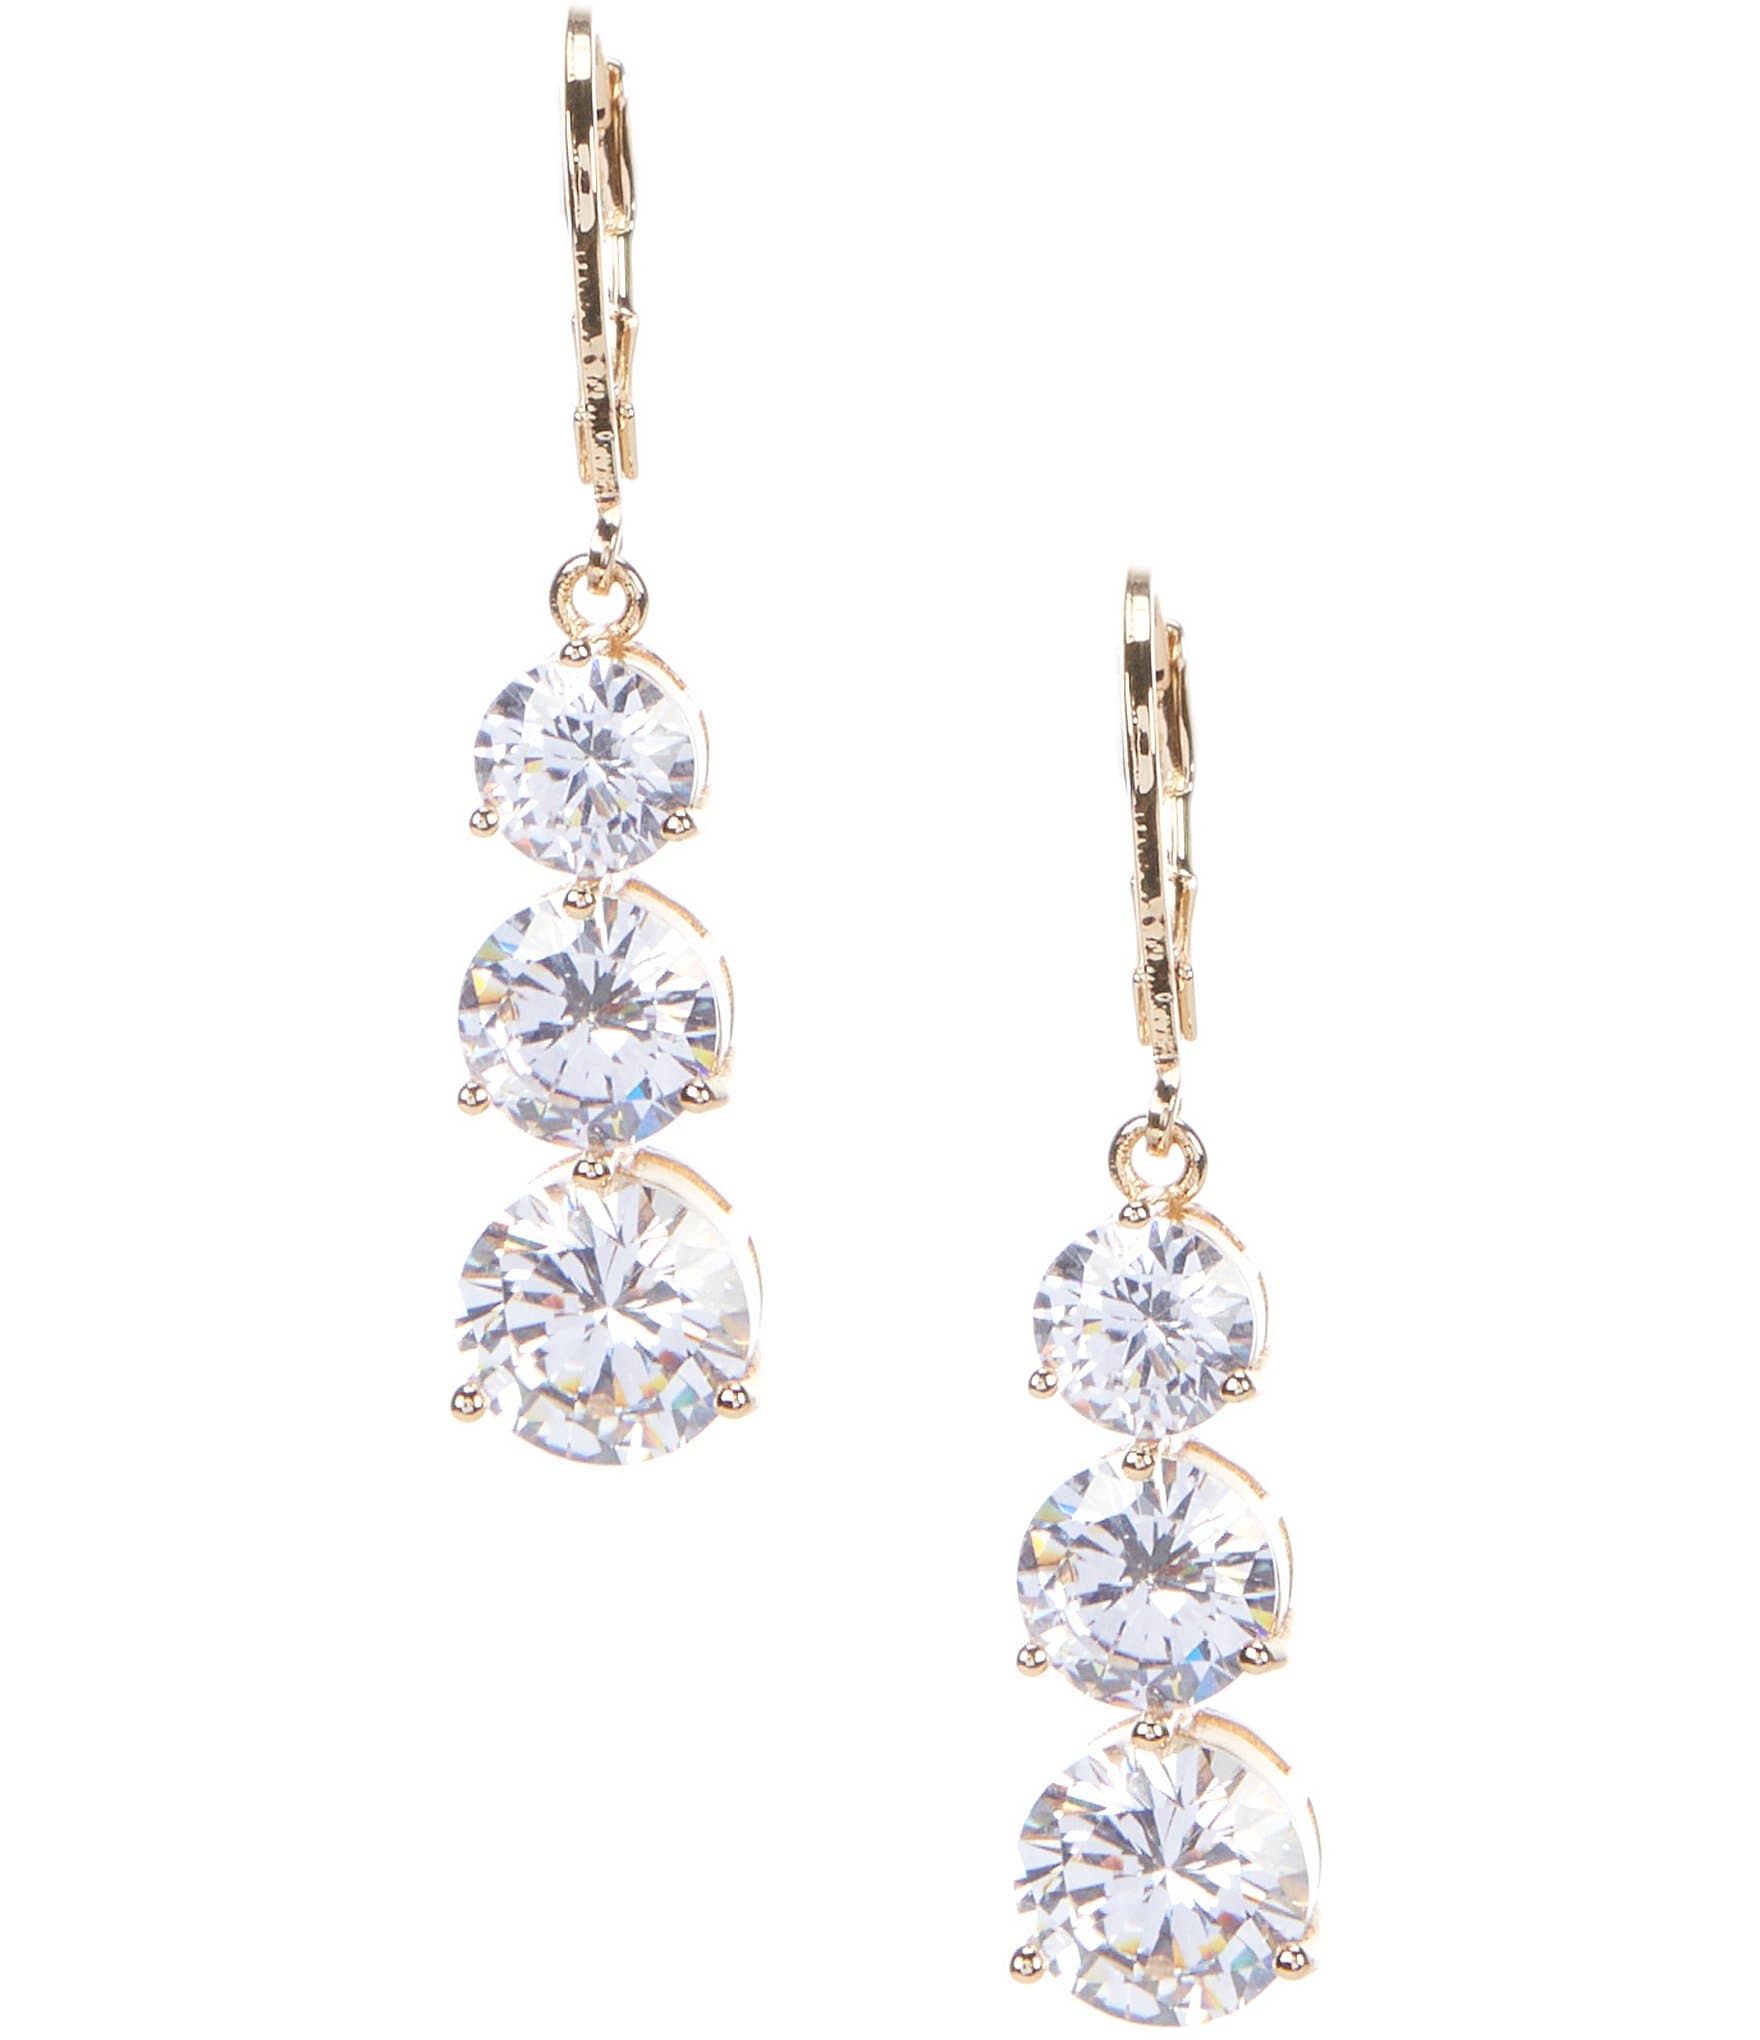 Celine Ball Drop Earrings  Rent Celine jewelry for $55/month